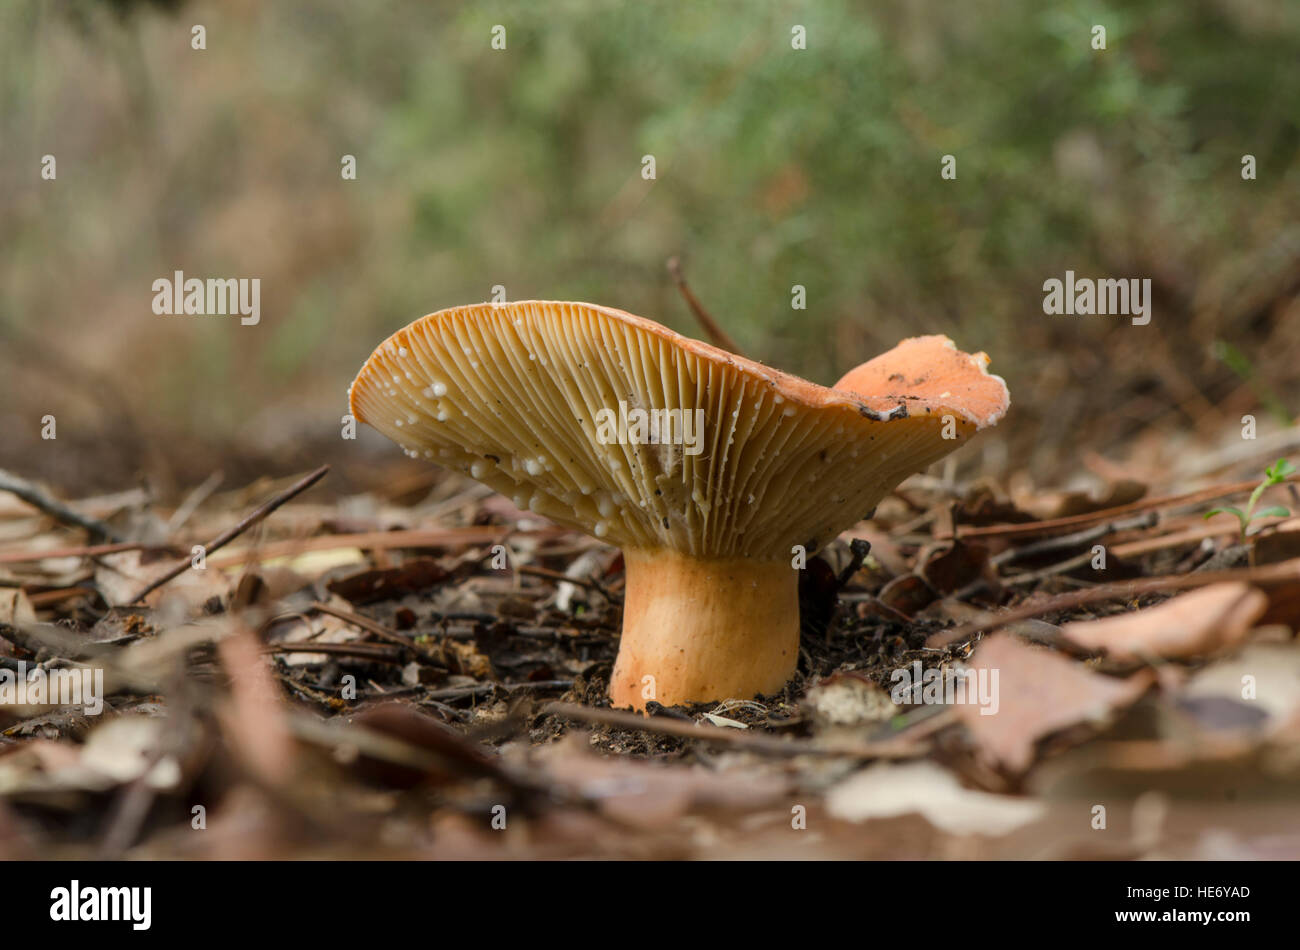 Lactarius rugatus, wild mushrooms, mushroom, in forest, Spain Stock Photo